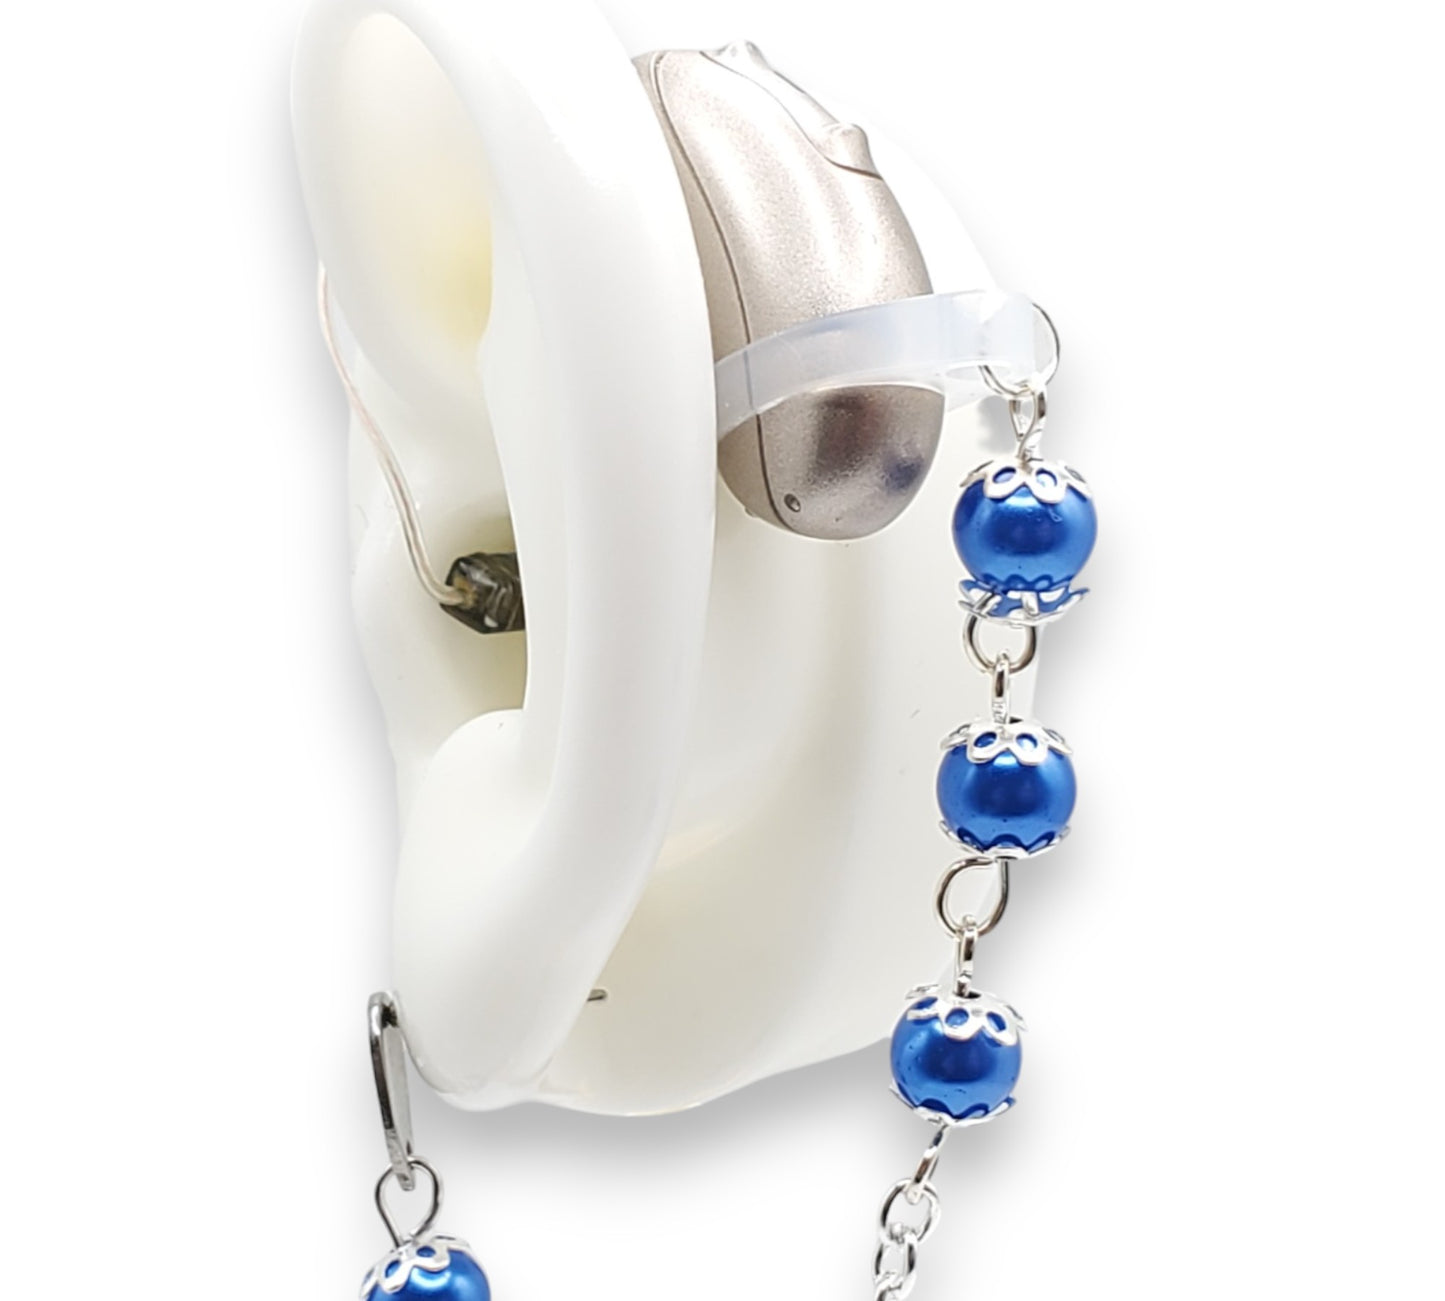 Liens d'oreille en chaîne de perles de verre bleu - Prothèses auditives